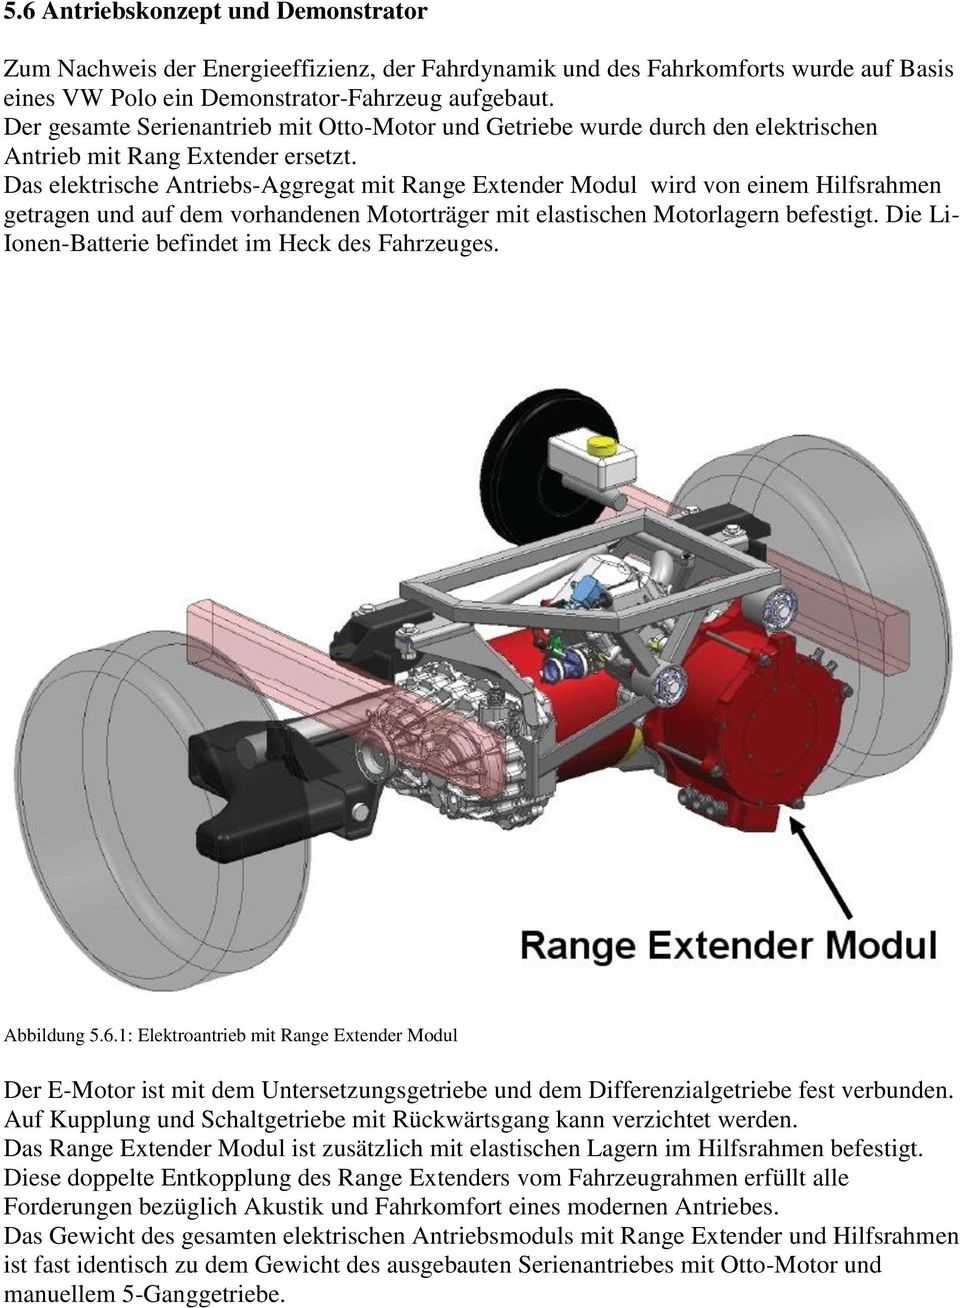 Das elektrische Antriebs-Aggregat mit Range Extender Modul wird von einem Hilfsrahmen getragen und auf dem vorhandenen Motorträger mit elastischen Motorlagern befestigt.